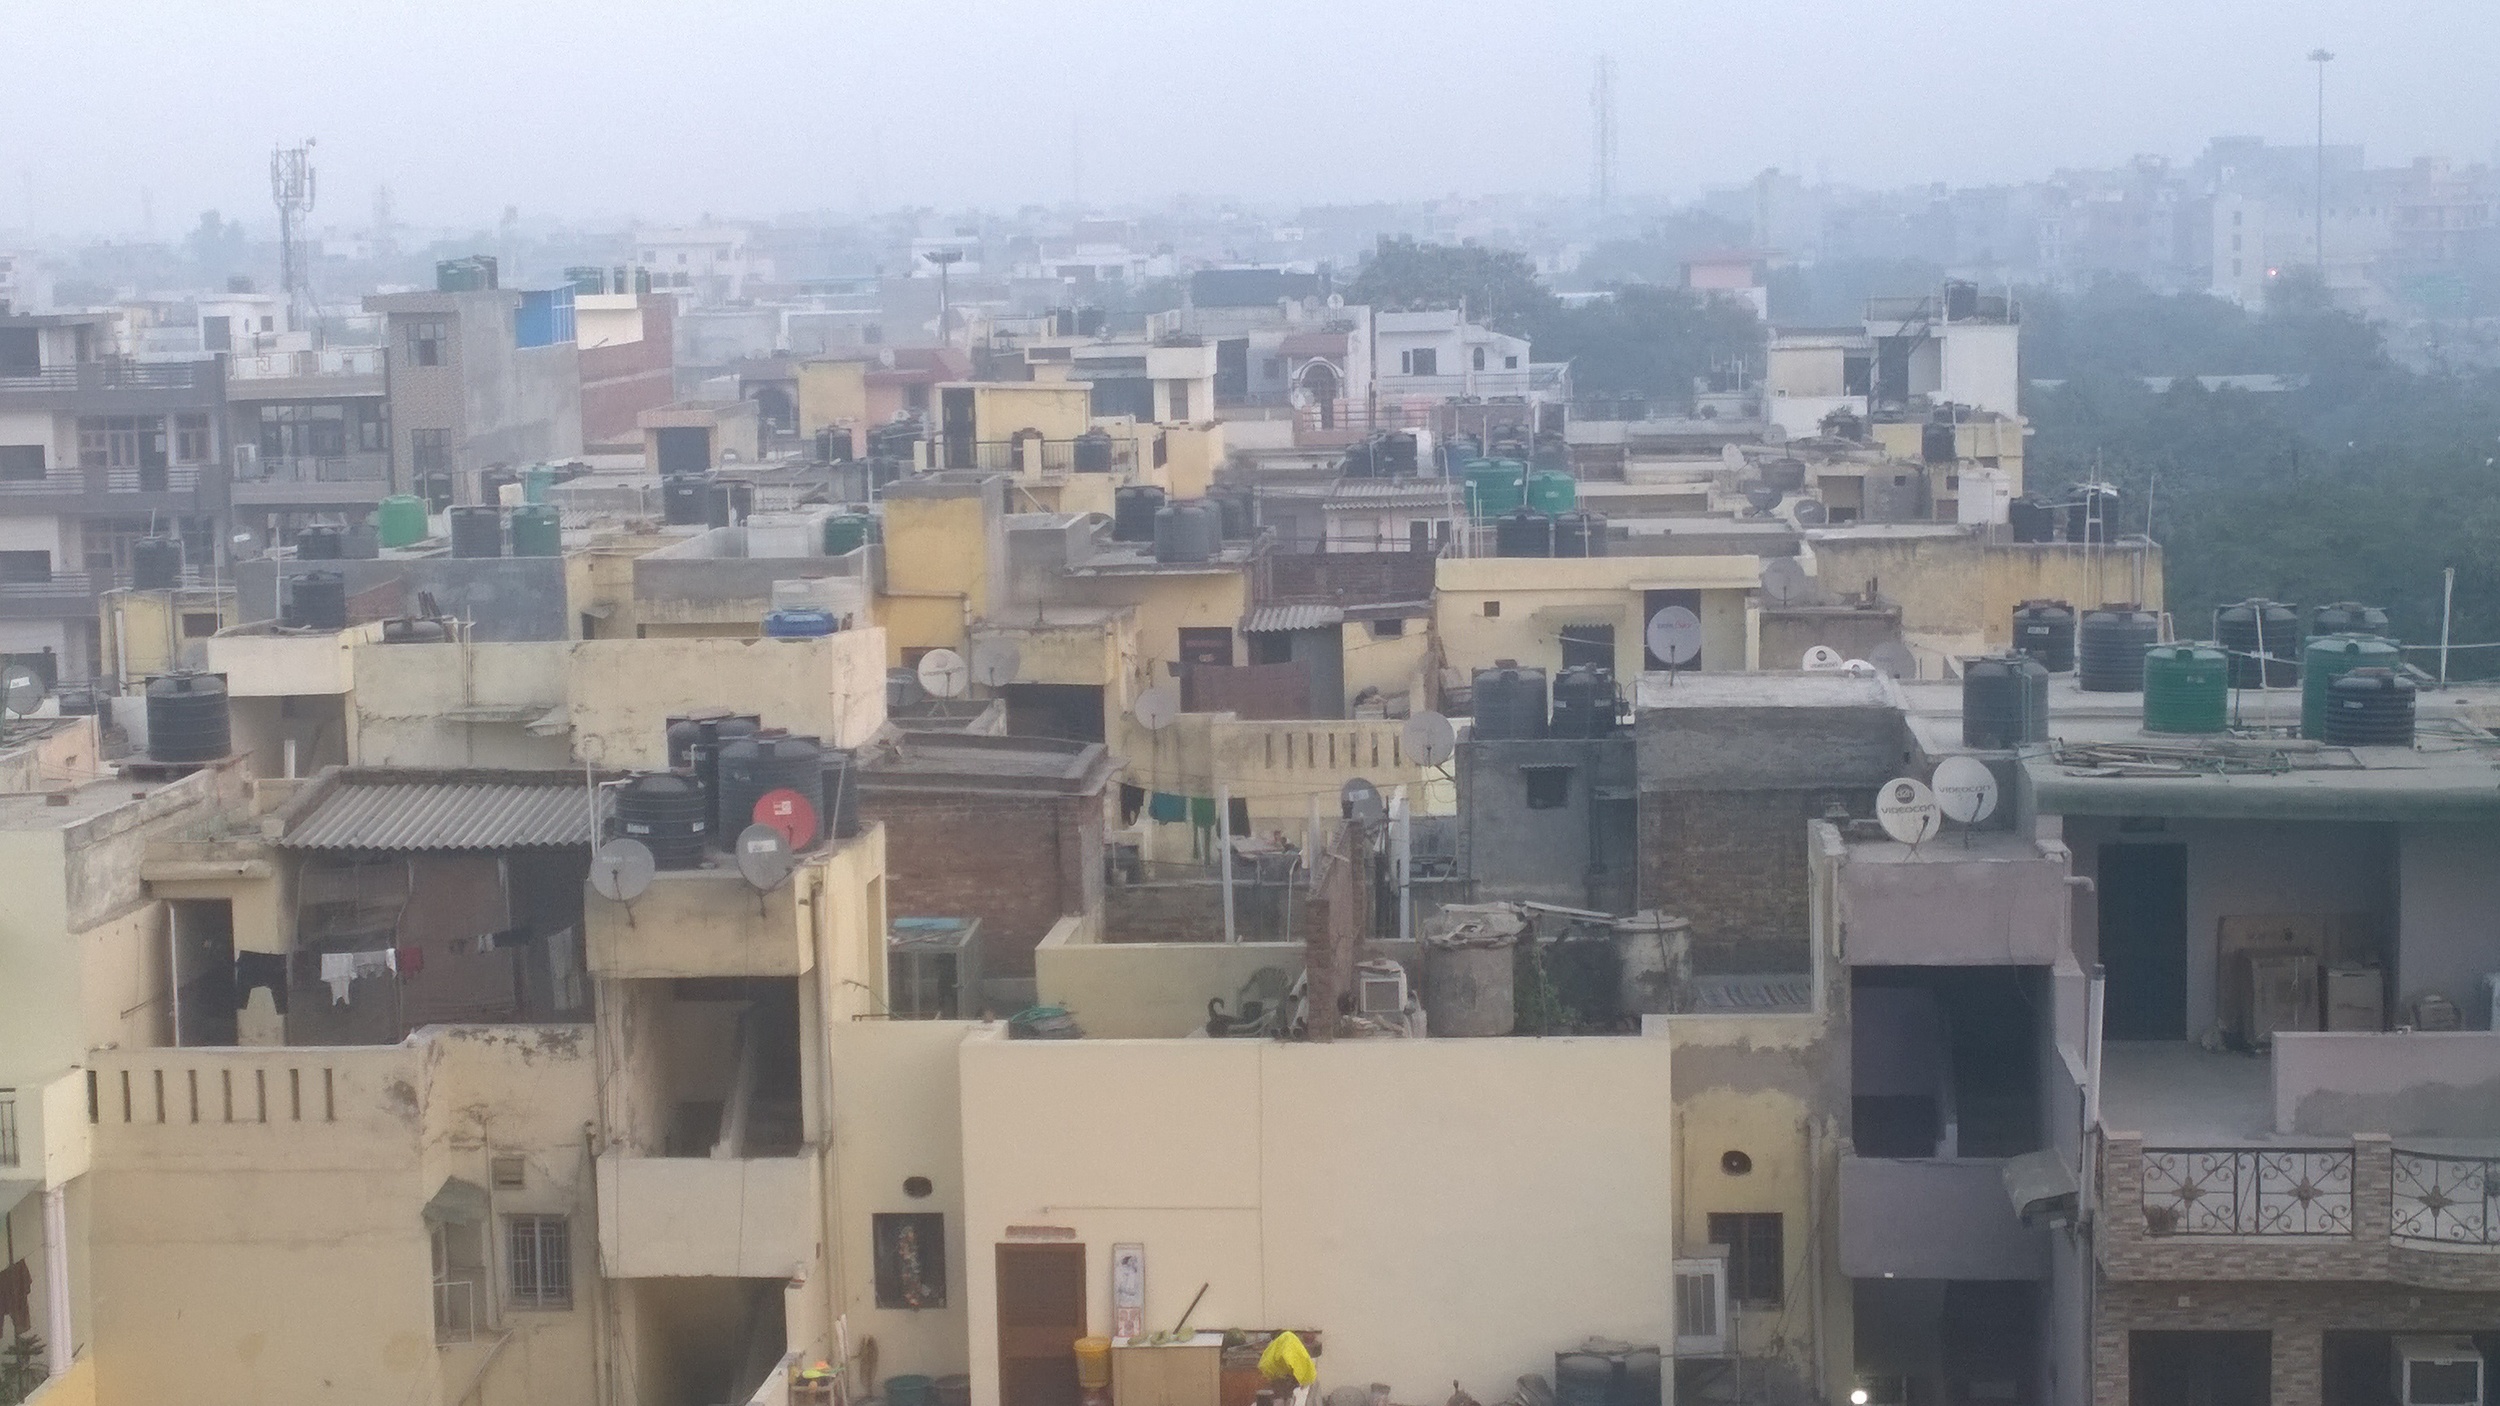 Town View, Noida, India